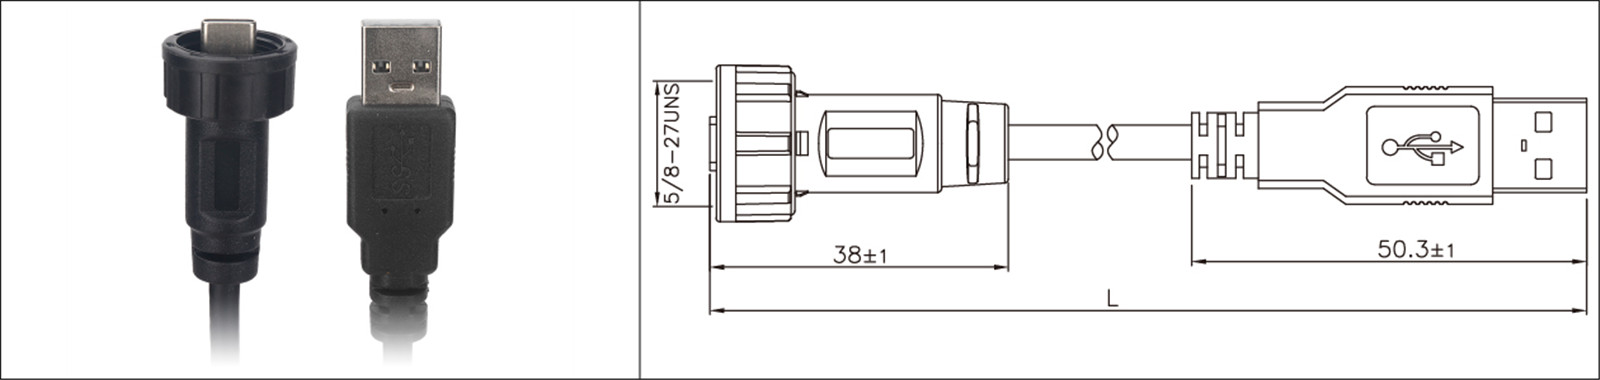 Micro USB-panelfäste typ 2.0 3.0 hona och hane vattentät IP67 overmold förlängningskabel industrikontakt-02 (8)